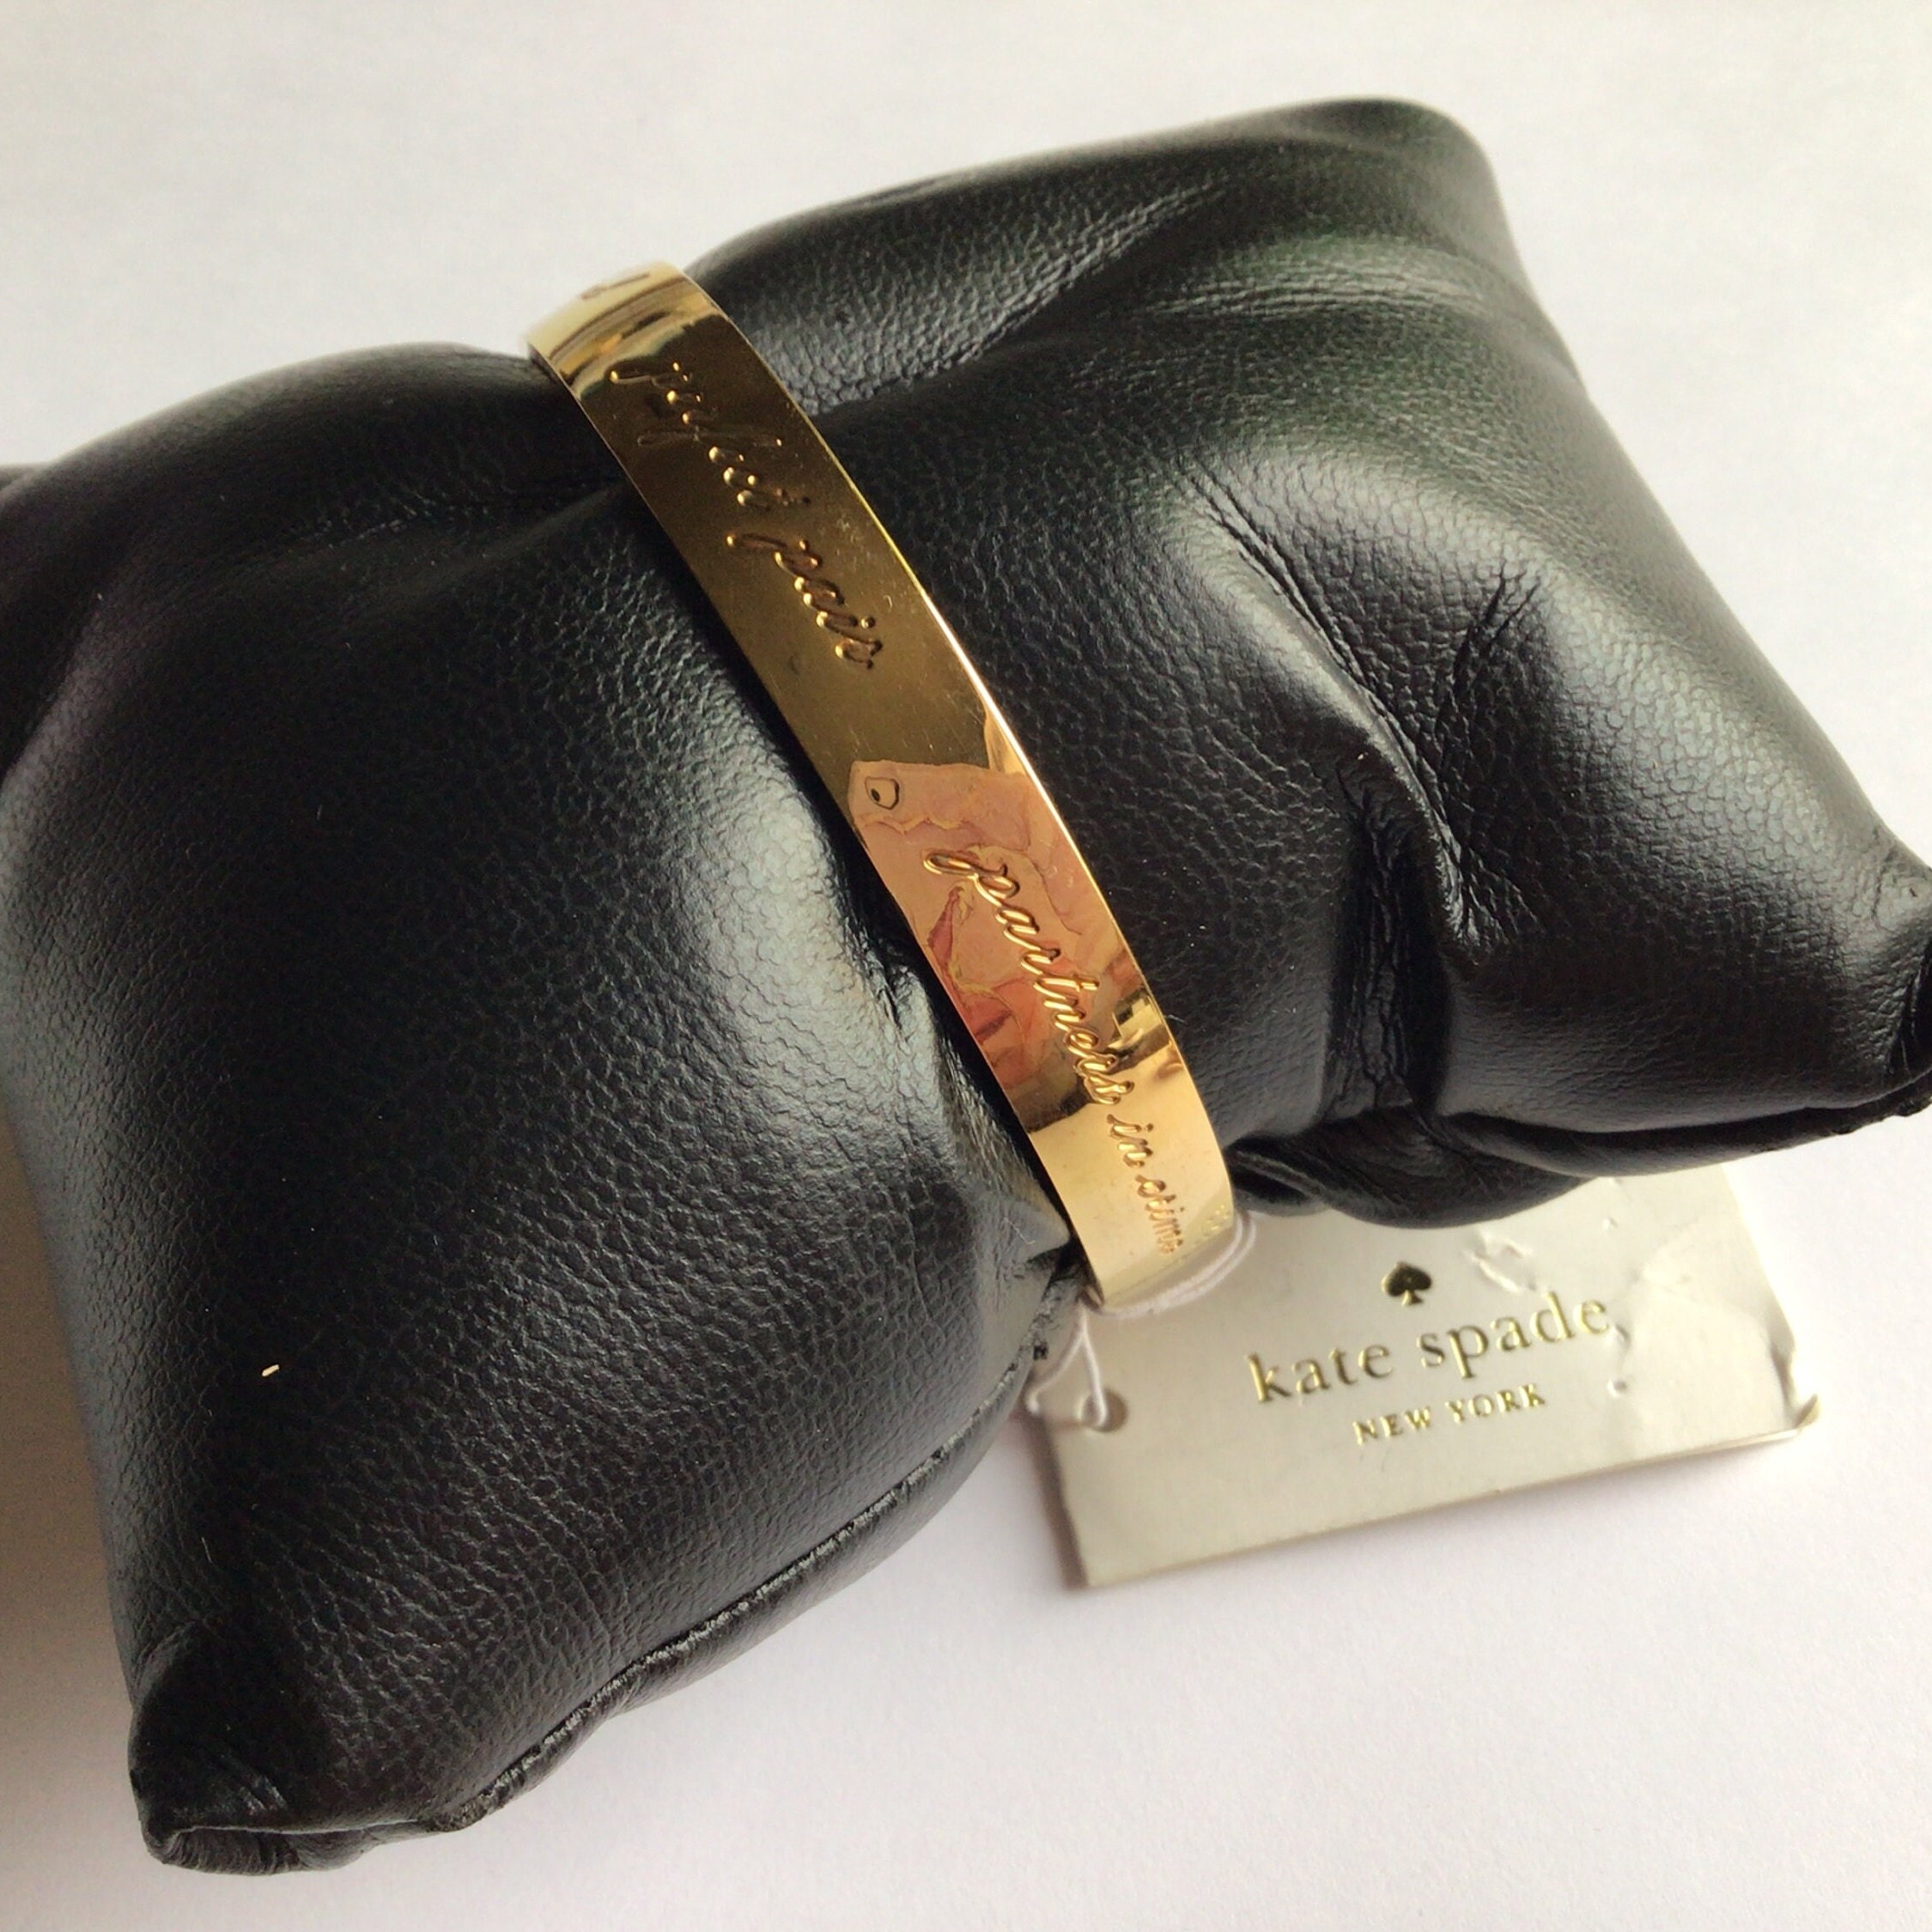 Kate Spade - Authenticated Handbag - Velvet Black Plain For Woman, Never Worn